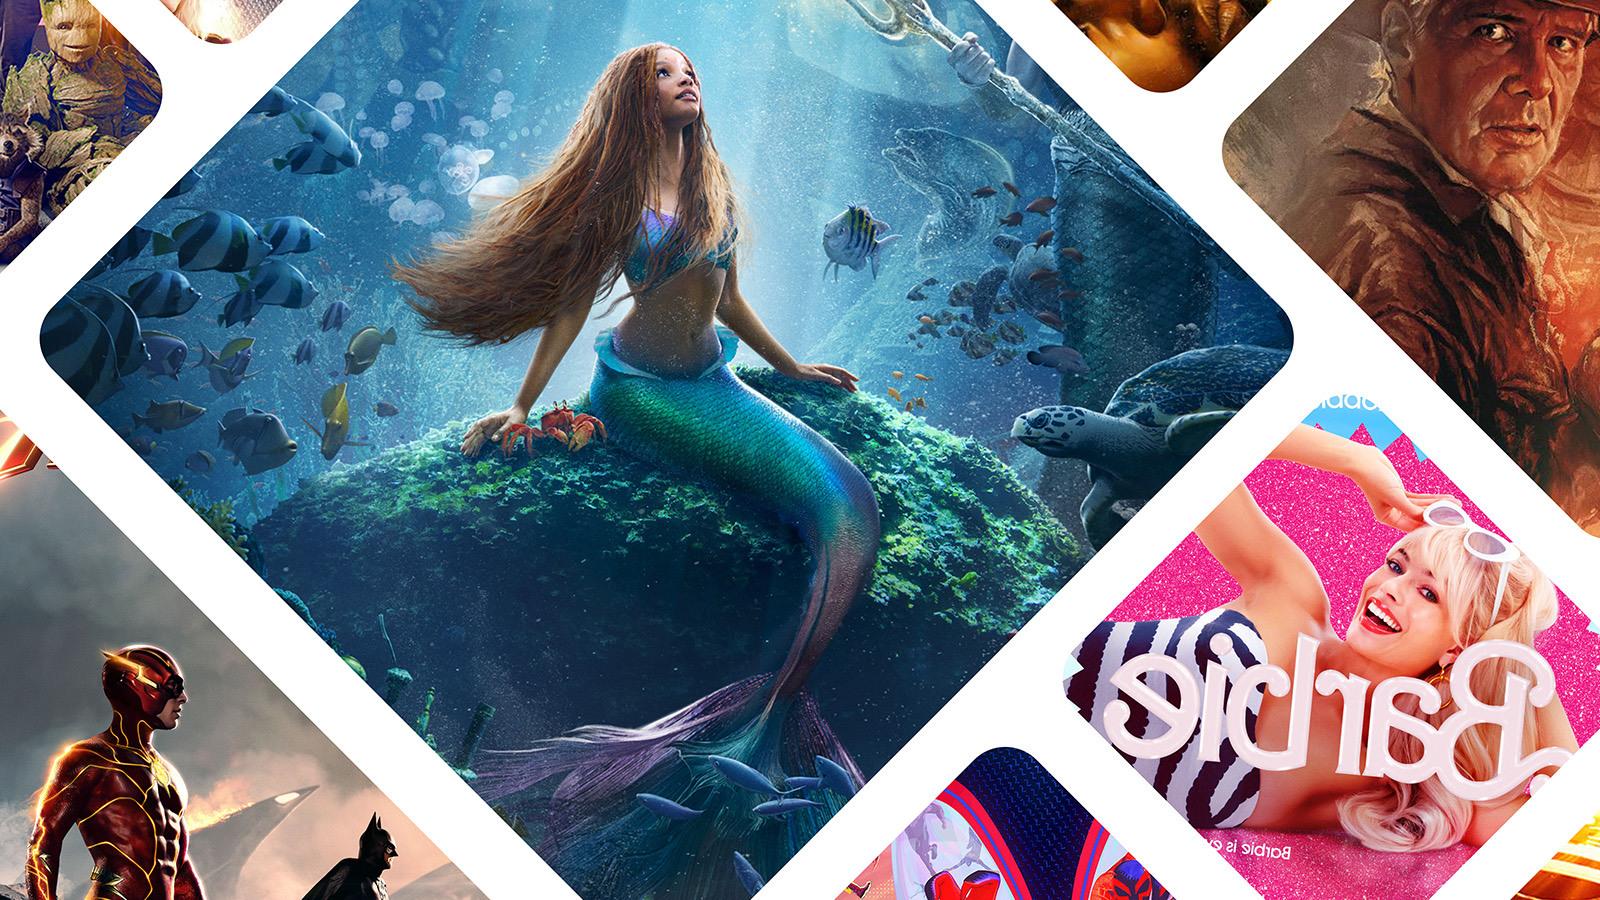 2023年夏季电影的马赛克图像, 包括《小美人鱼》,’ ‘Barbie,以及《夺宝奇兵:命运之盘》.'